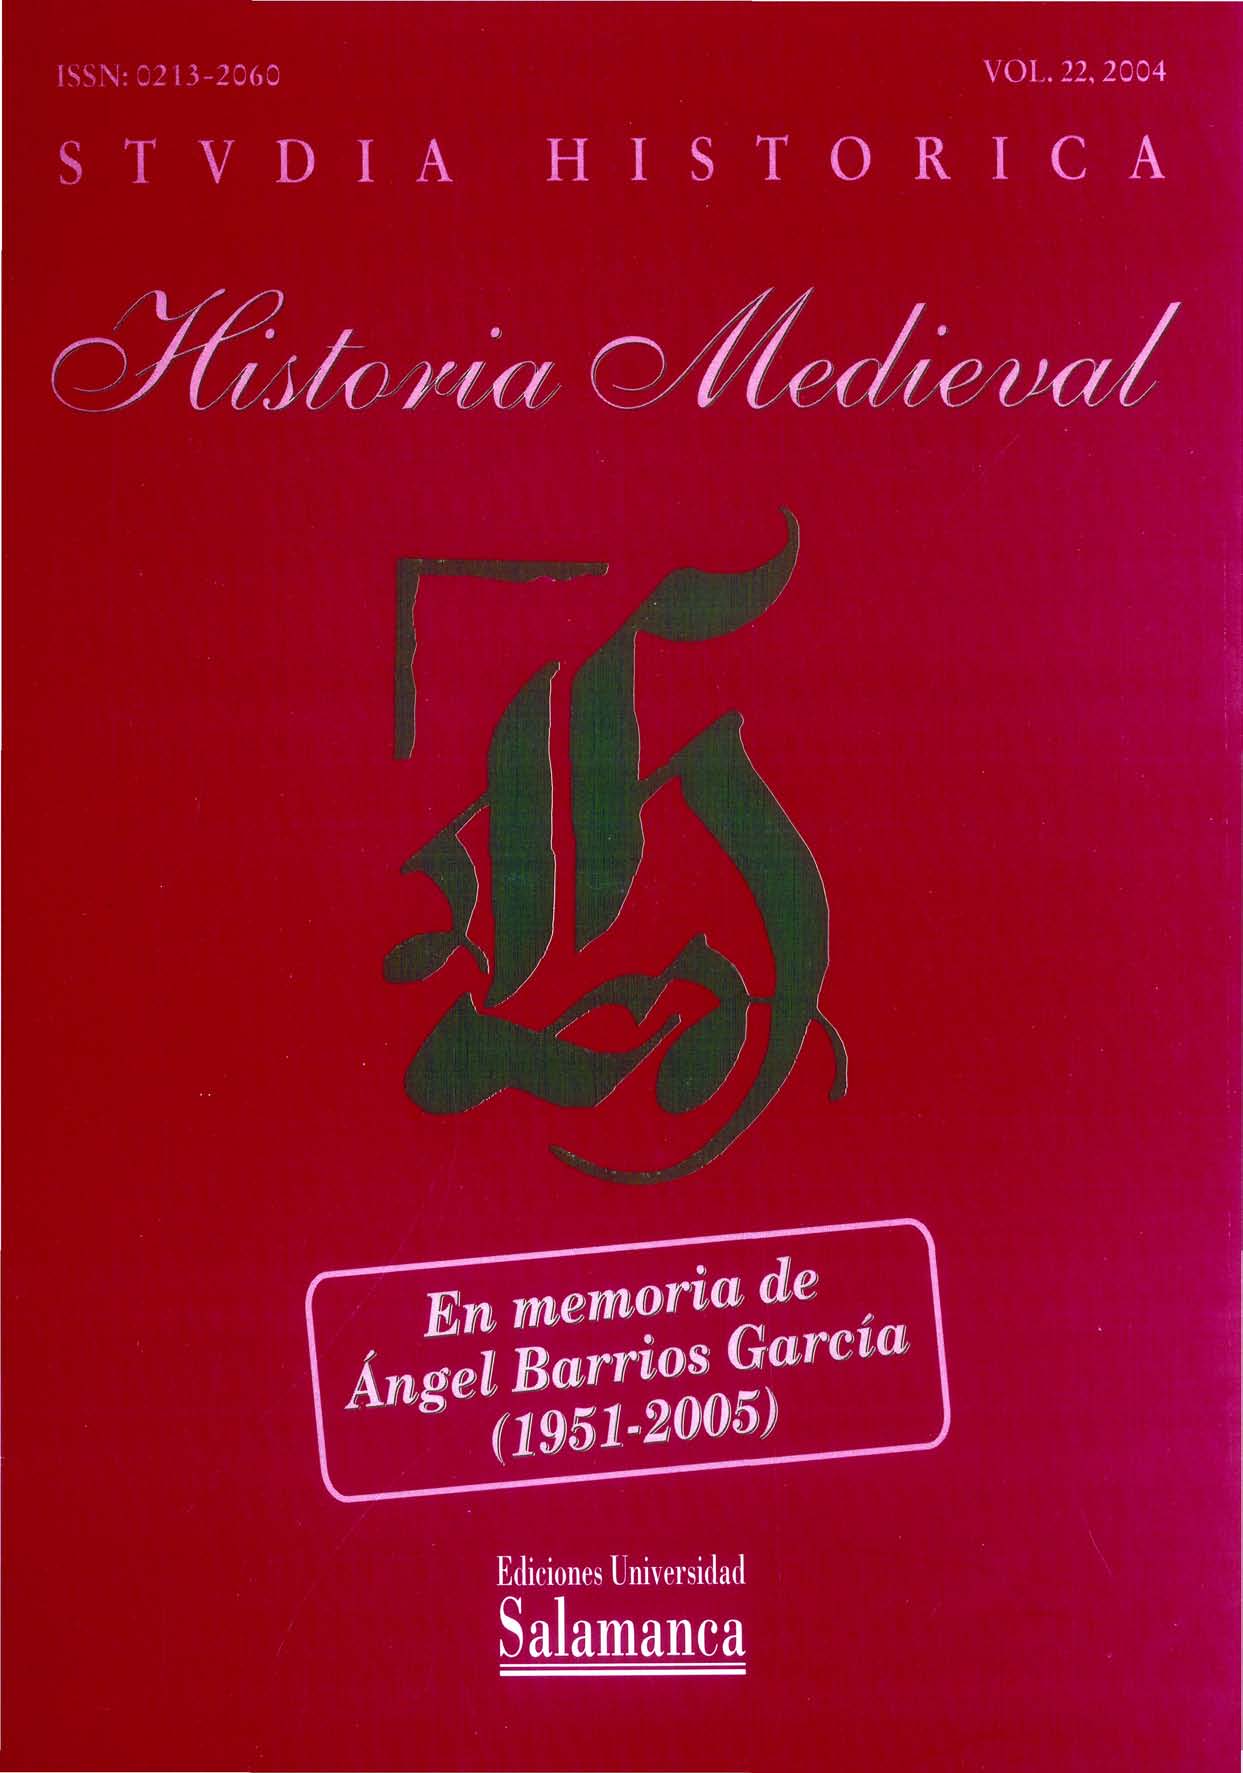                         Ver Vol. 22 (2004): En memoria de Ángel Barrios García (1951-2005)
                    